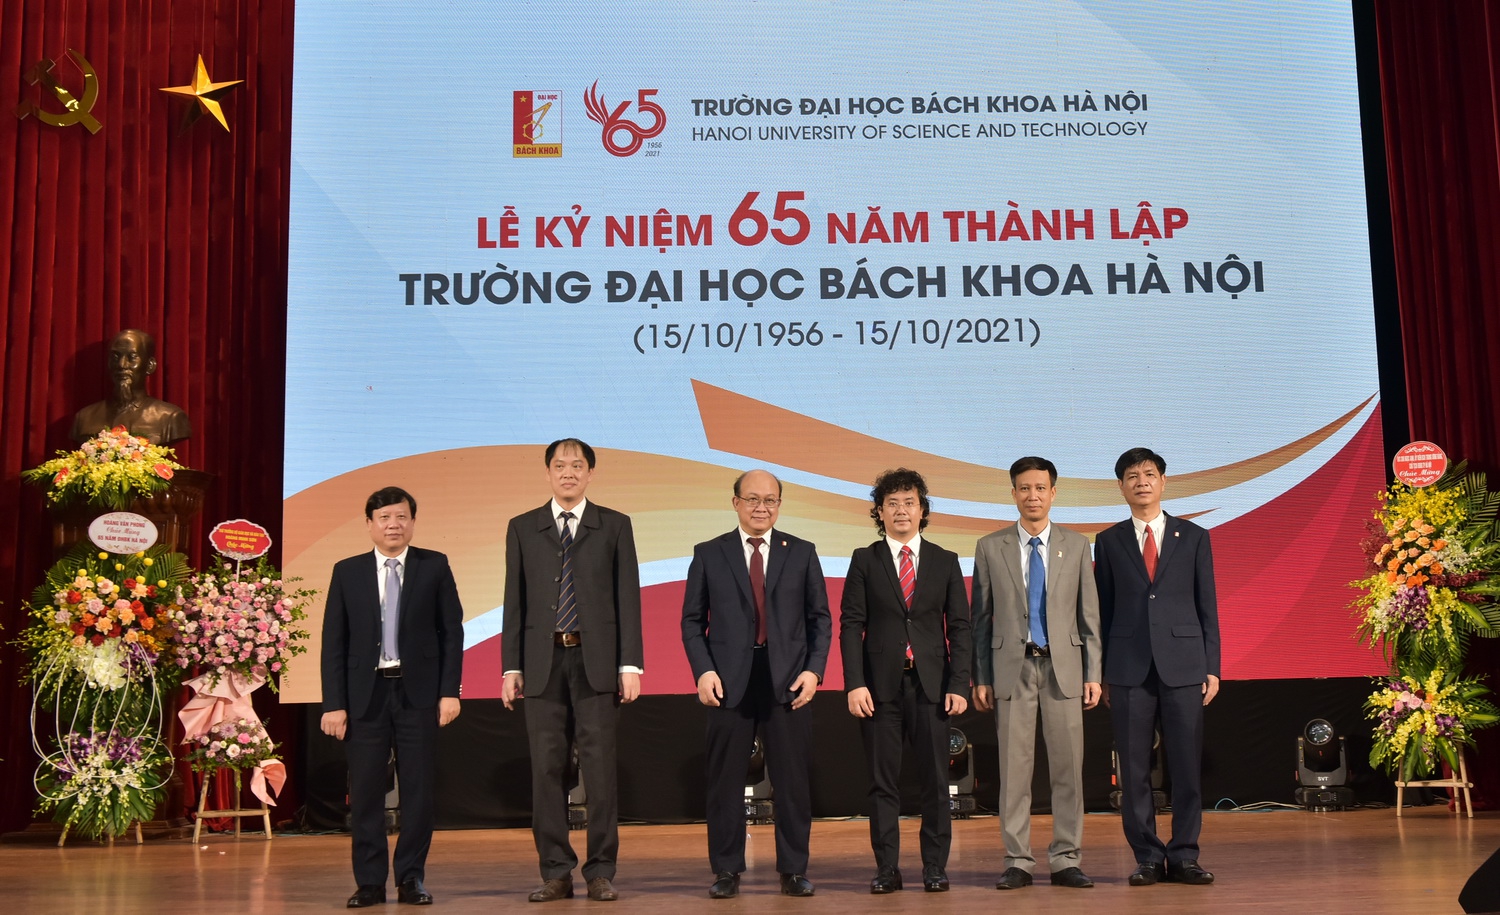 Trường Đại học Bách khoa Hà Nội kỷ niệm 65 năm thành lập